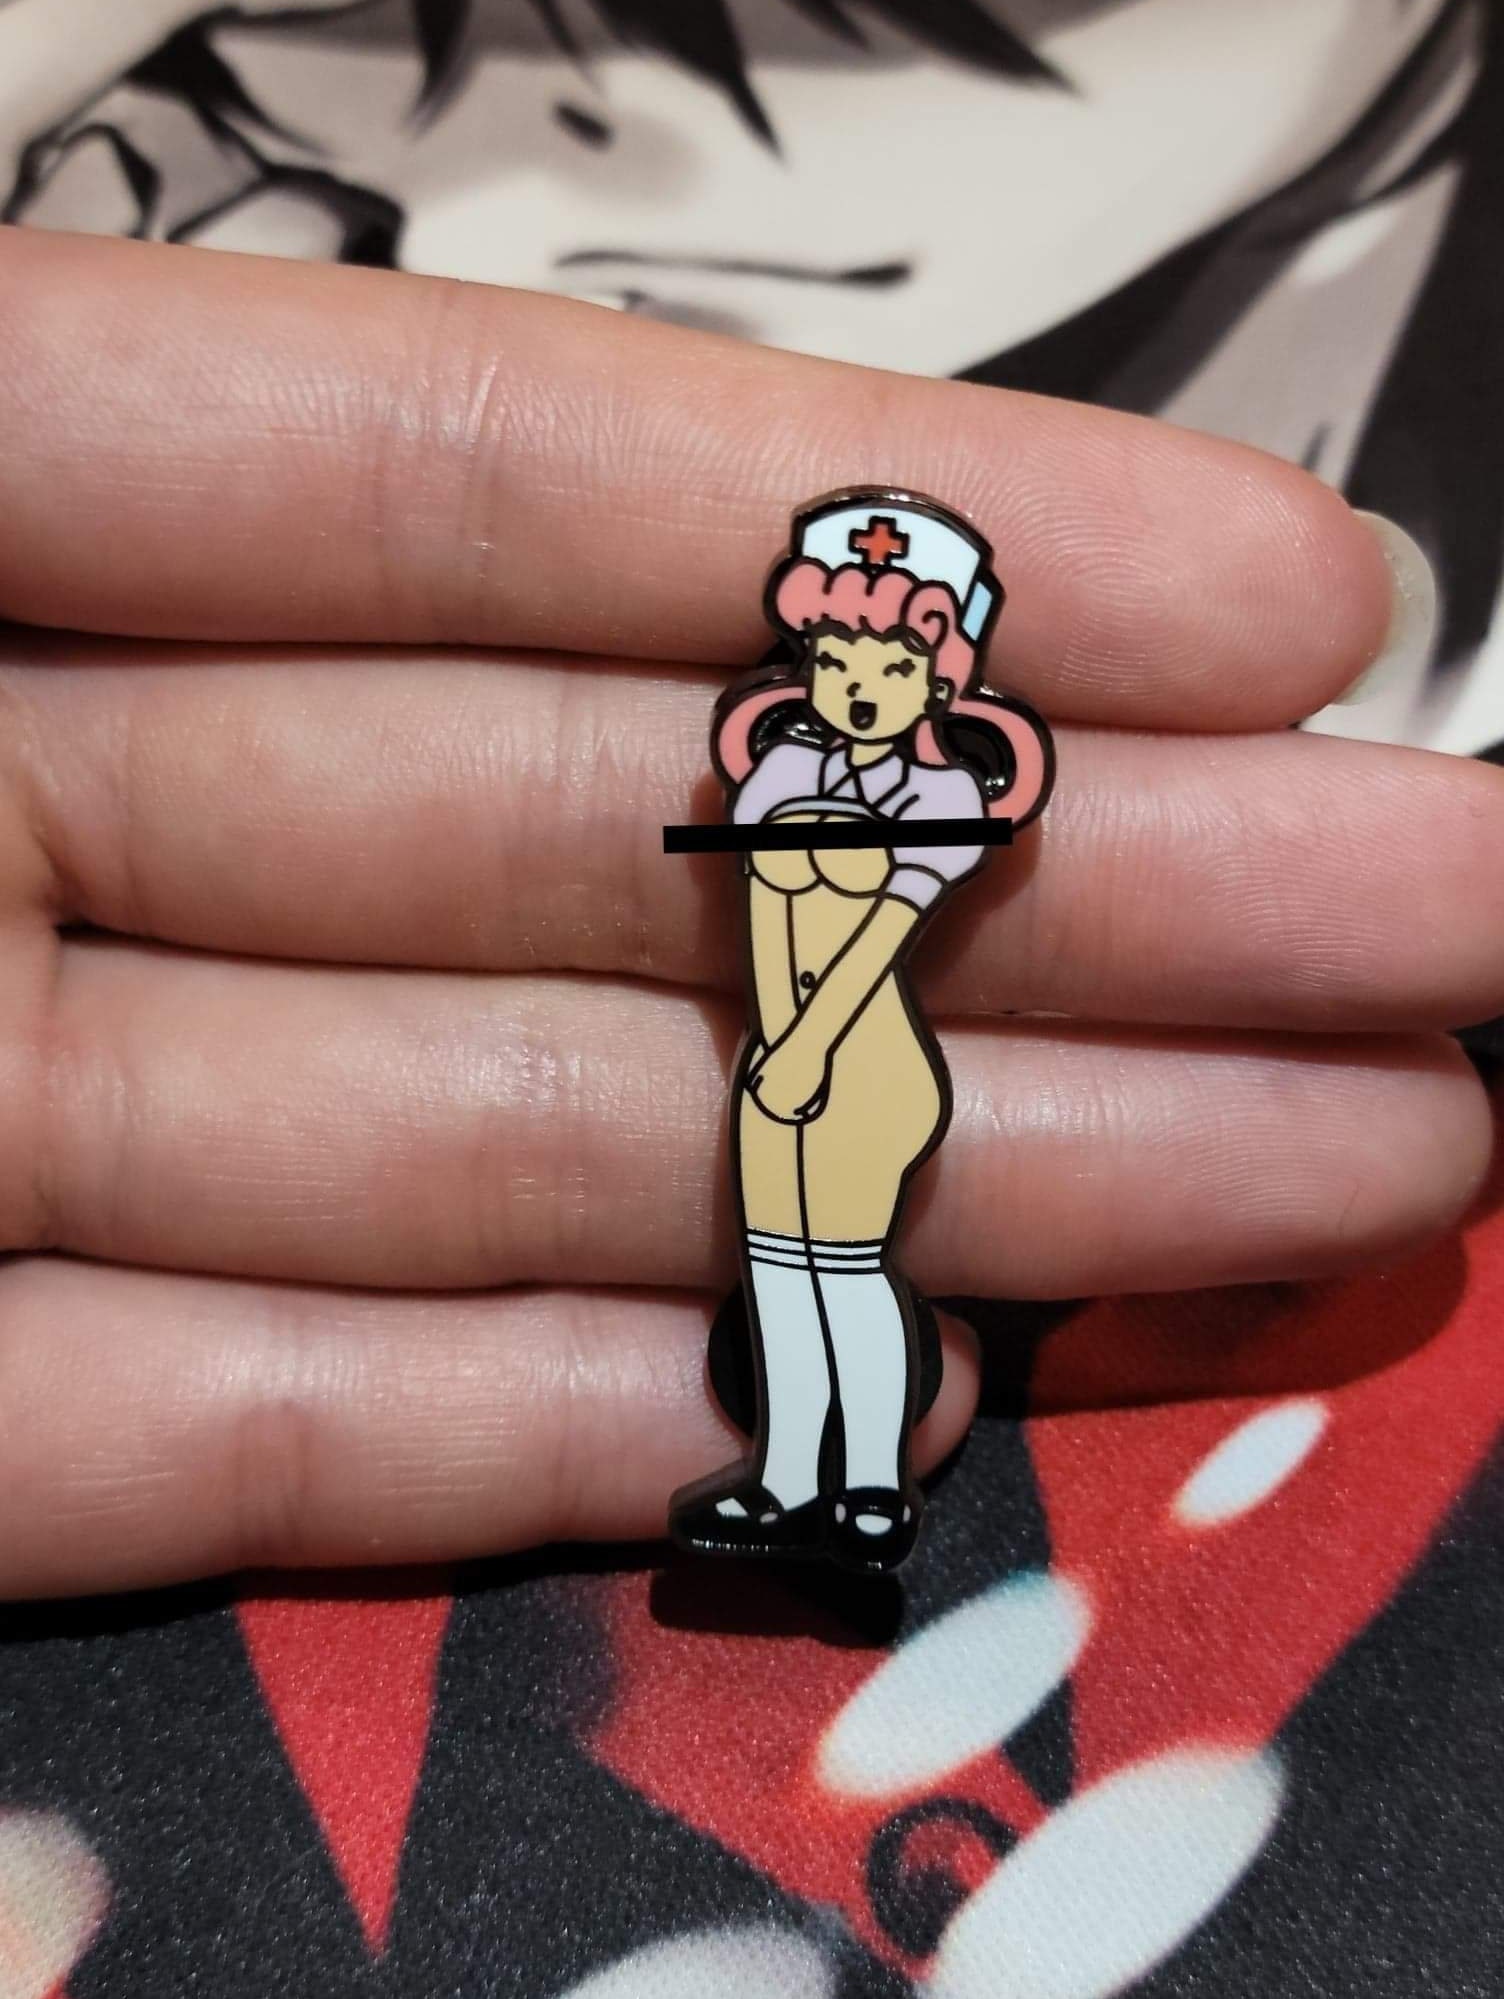 2" Harde emaille pin Sexy Nurse Joy - NSFW (pin niet echt gecensureerd...